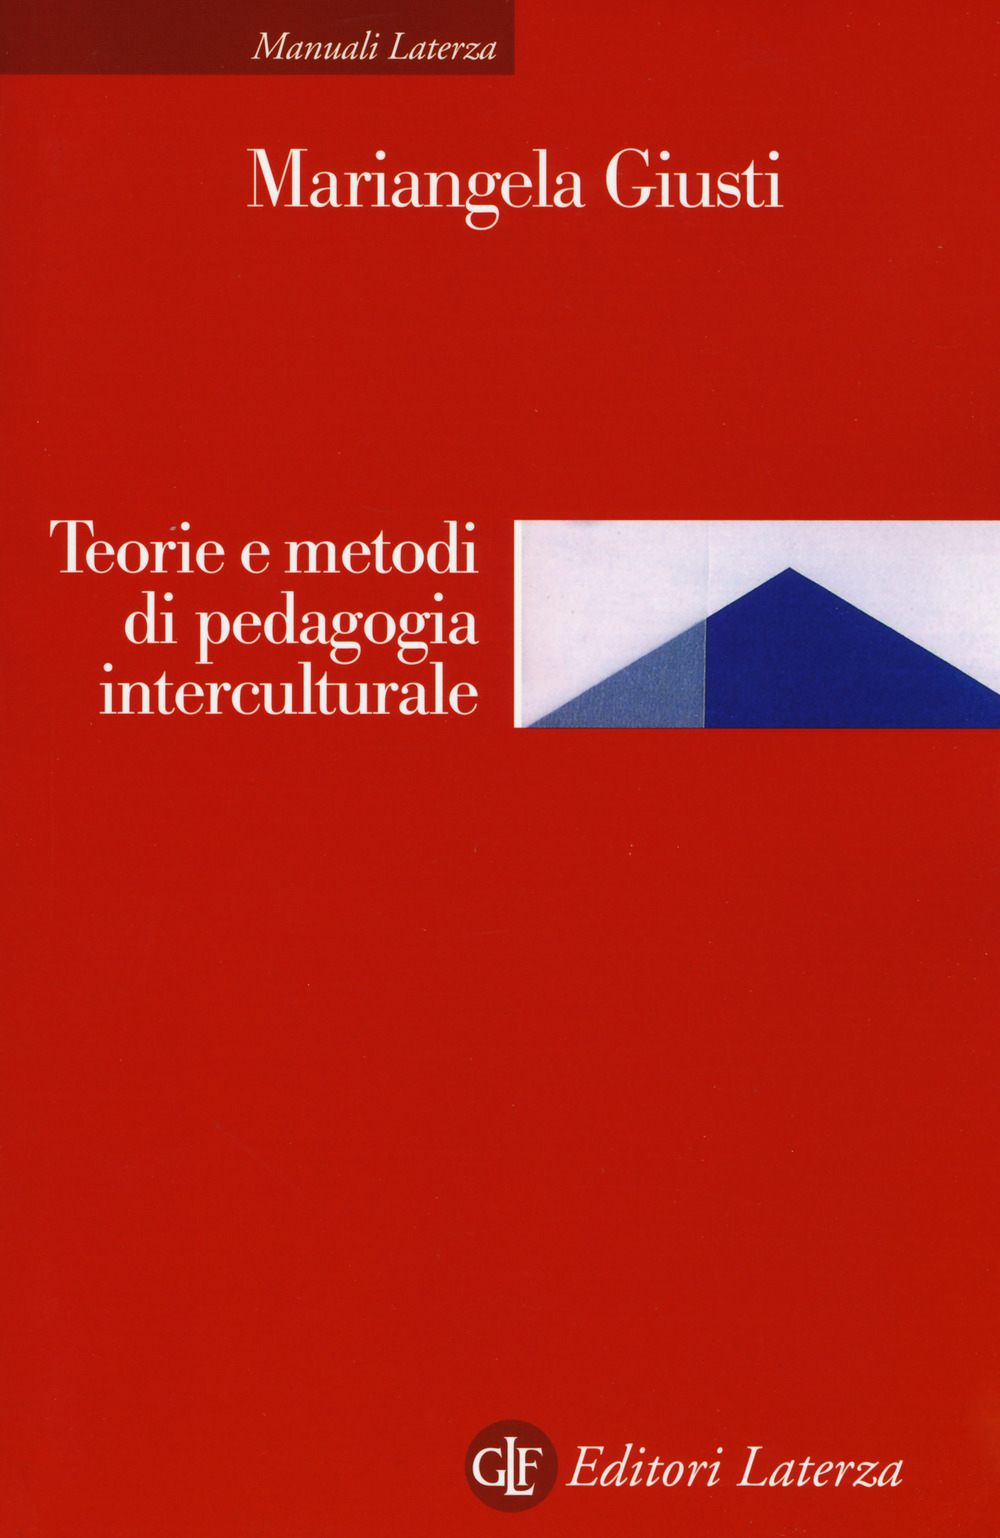 Image of Teoria e metodi di pedagogia interculturale